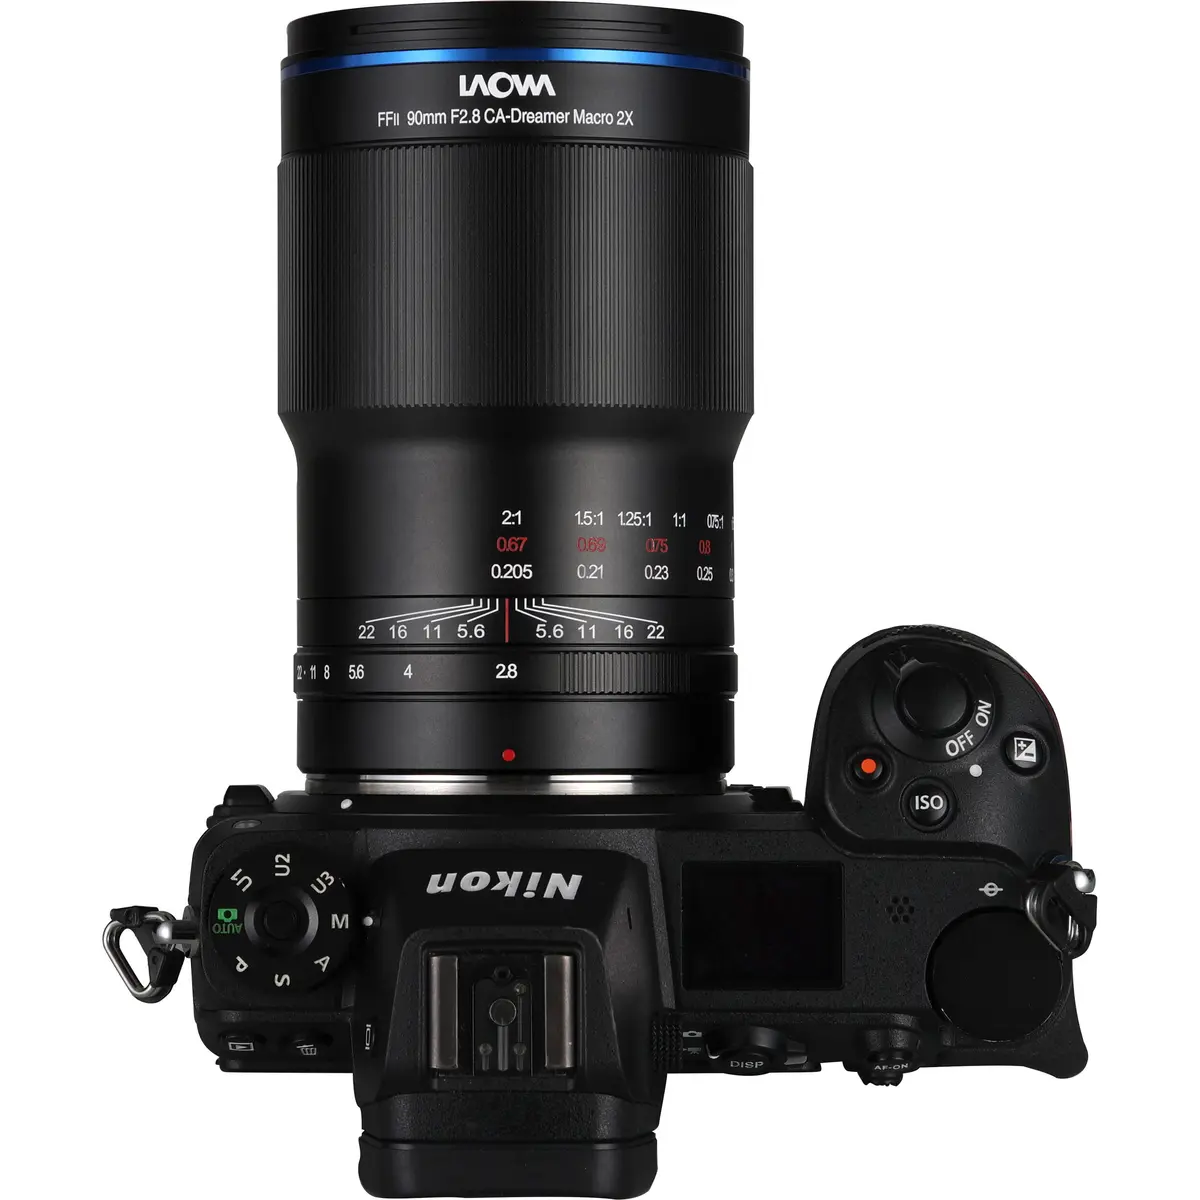 4. Laowa FFII 90mm F2.8 CA-Dreamer Macro 2X (Nikon Z)